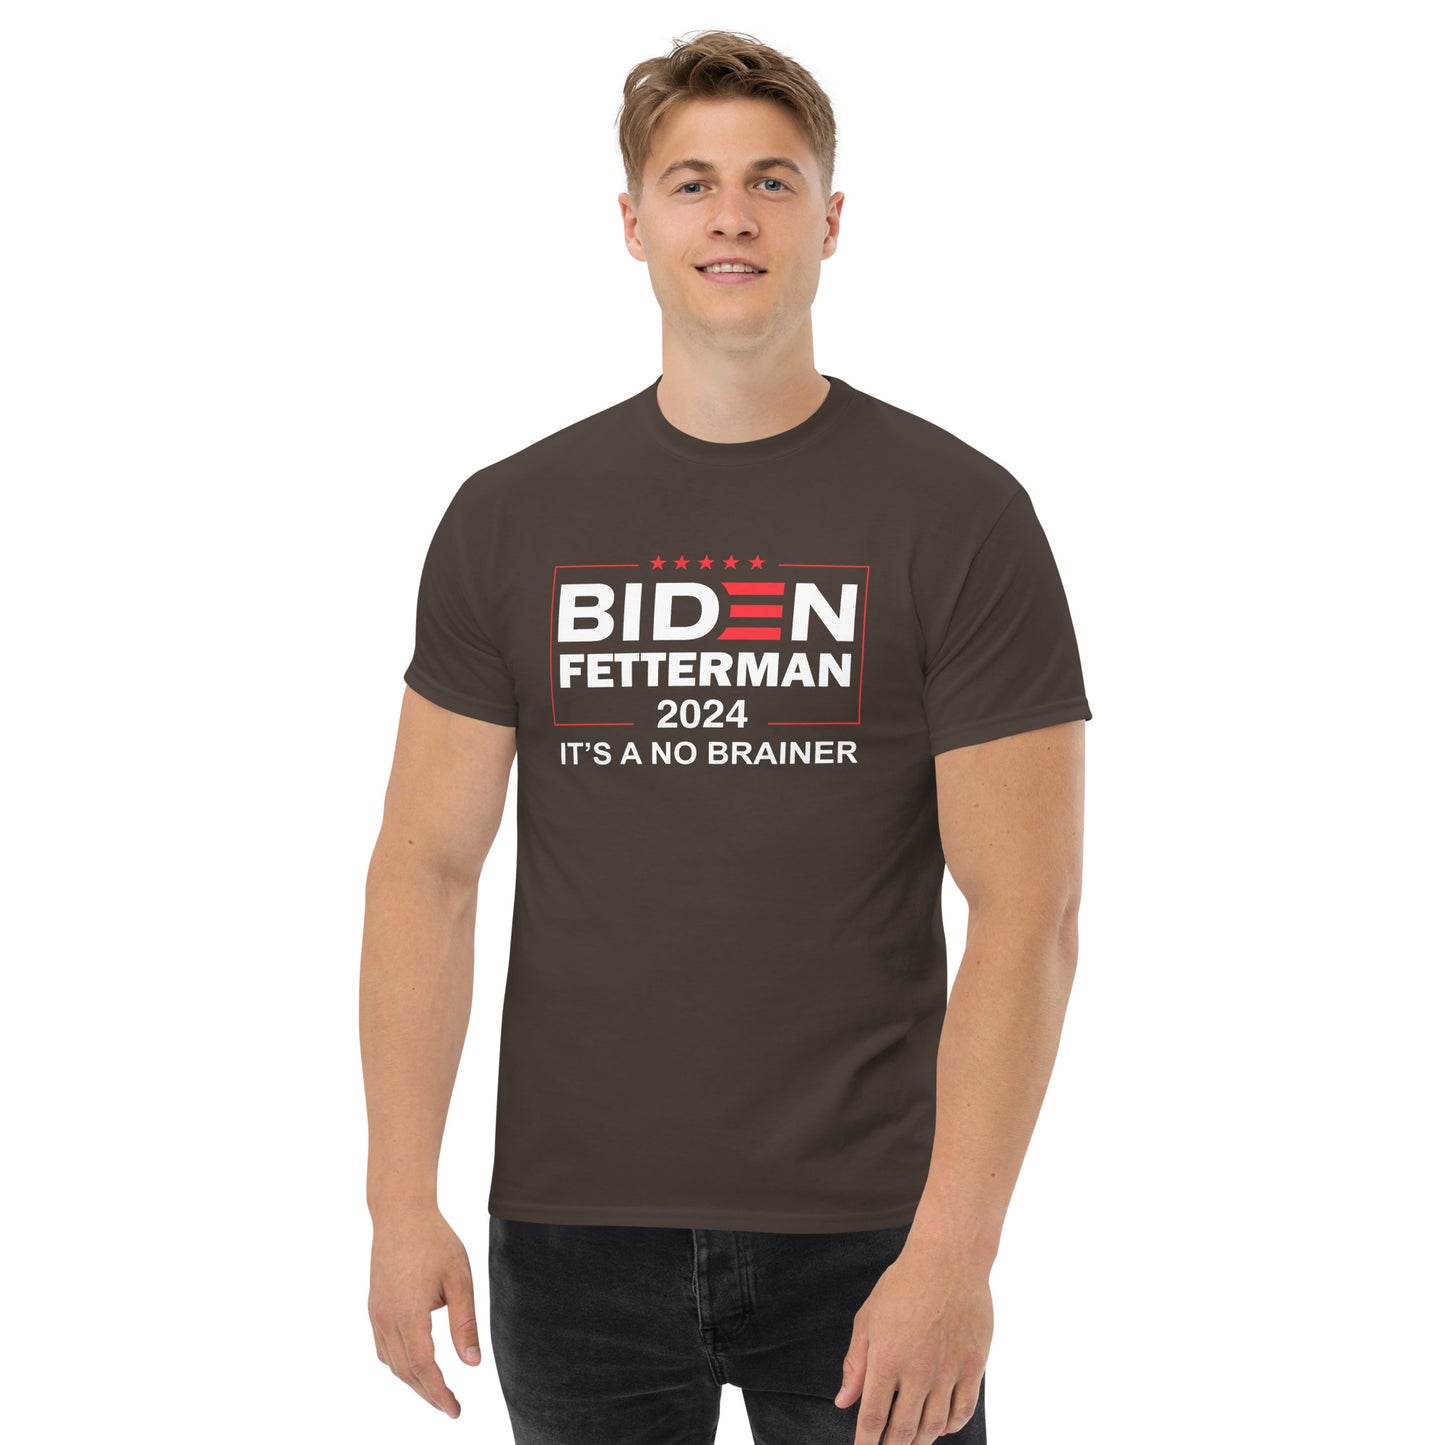 Biden Fetterman 2024 "Its's A No Brainer" T-Shirt